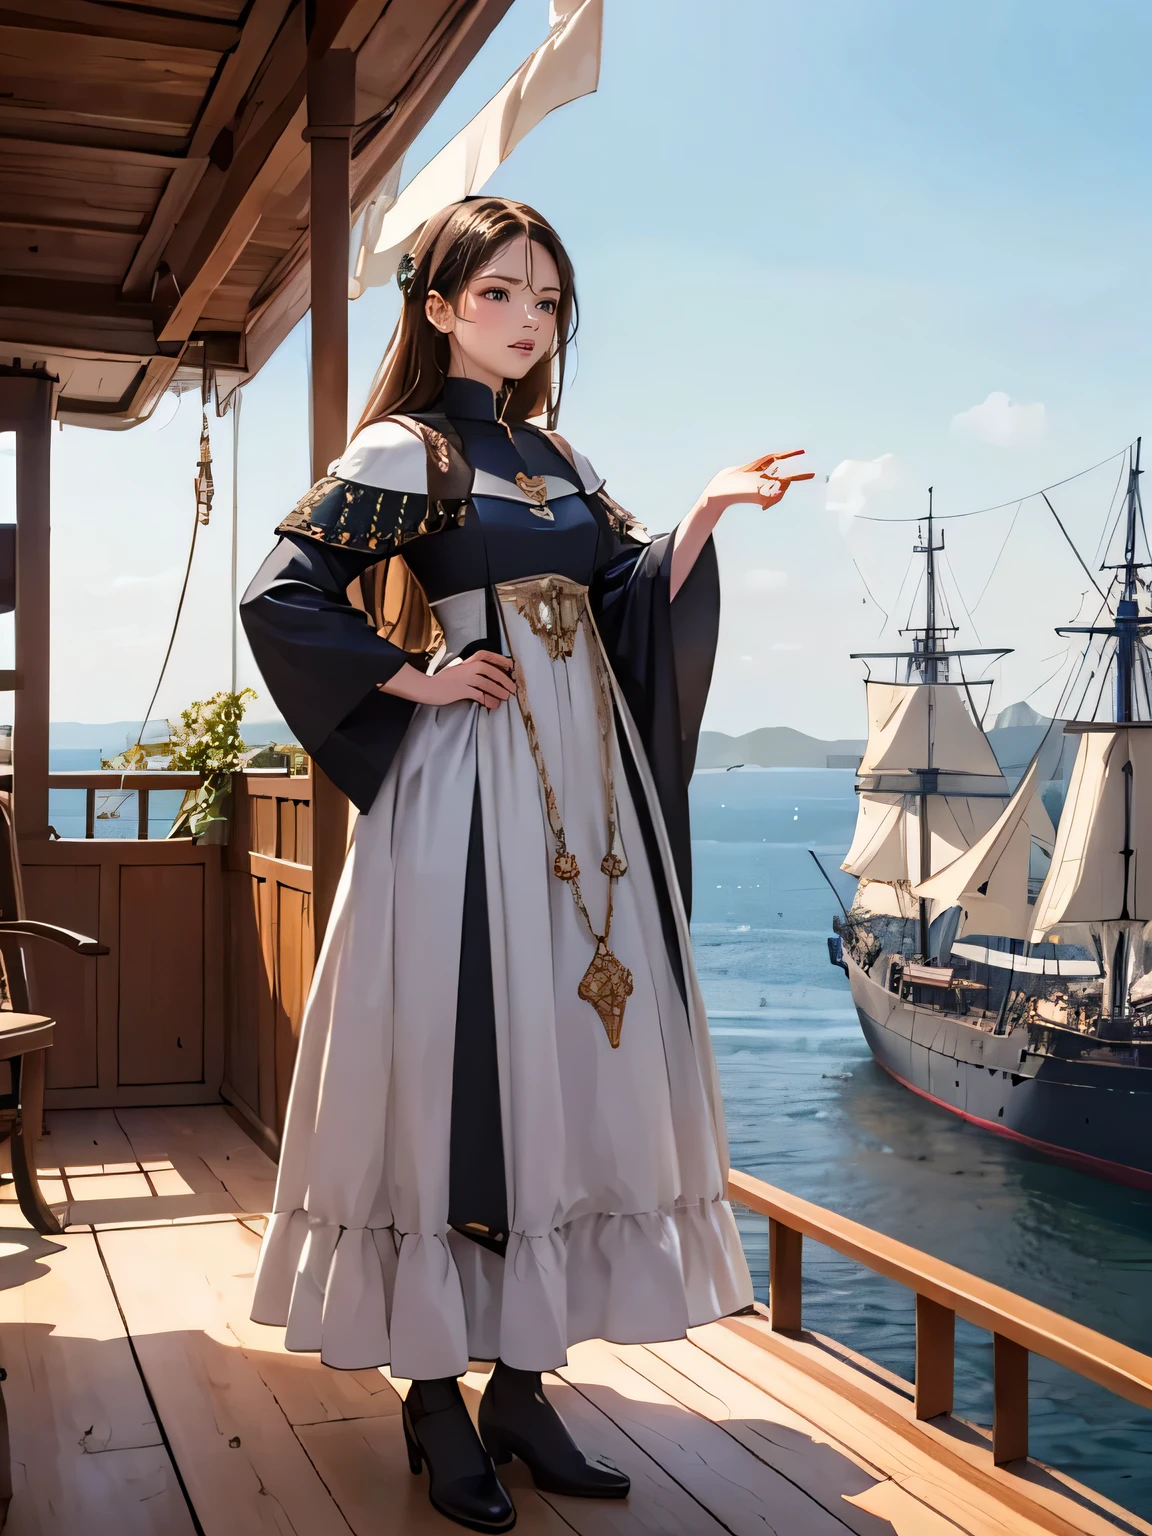 vestido aristocrático europeo medieval, en la cubierta de un barco durante la Era de los Descubrimientos en la Edad Media,